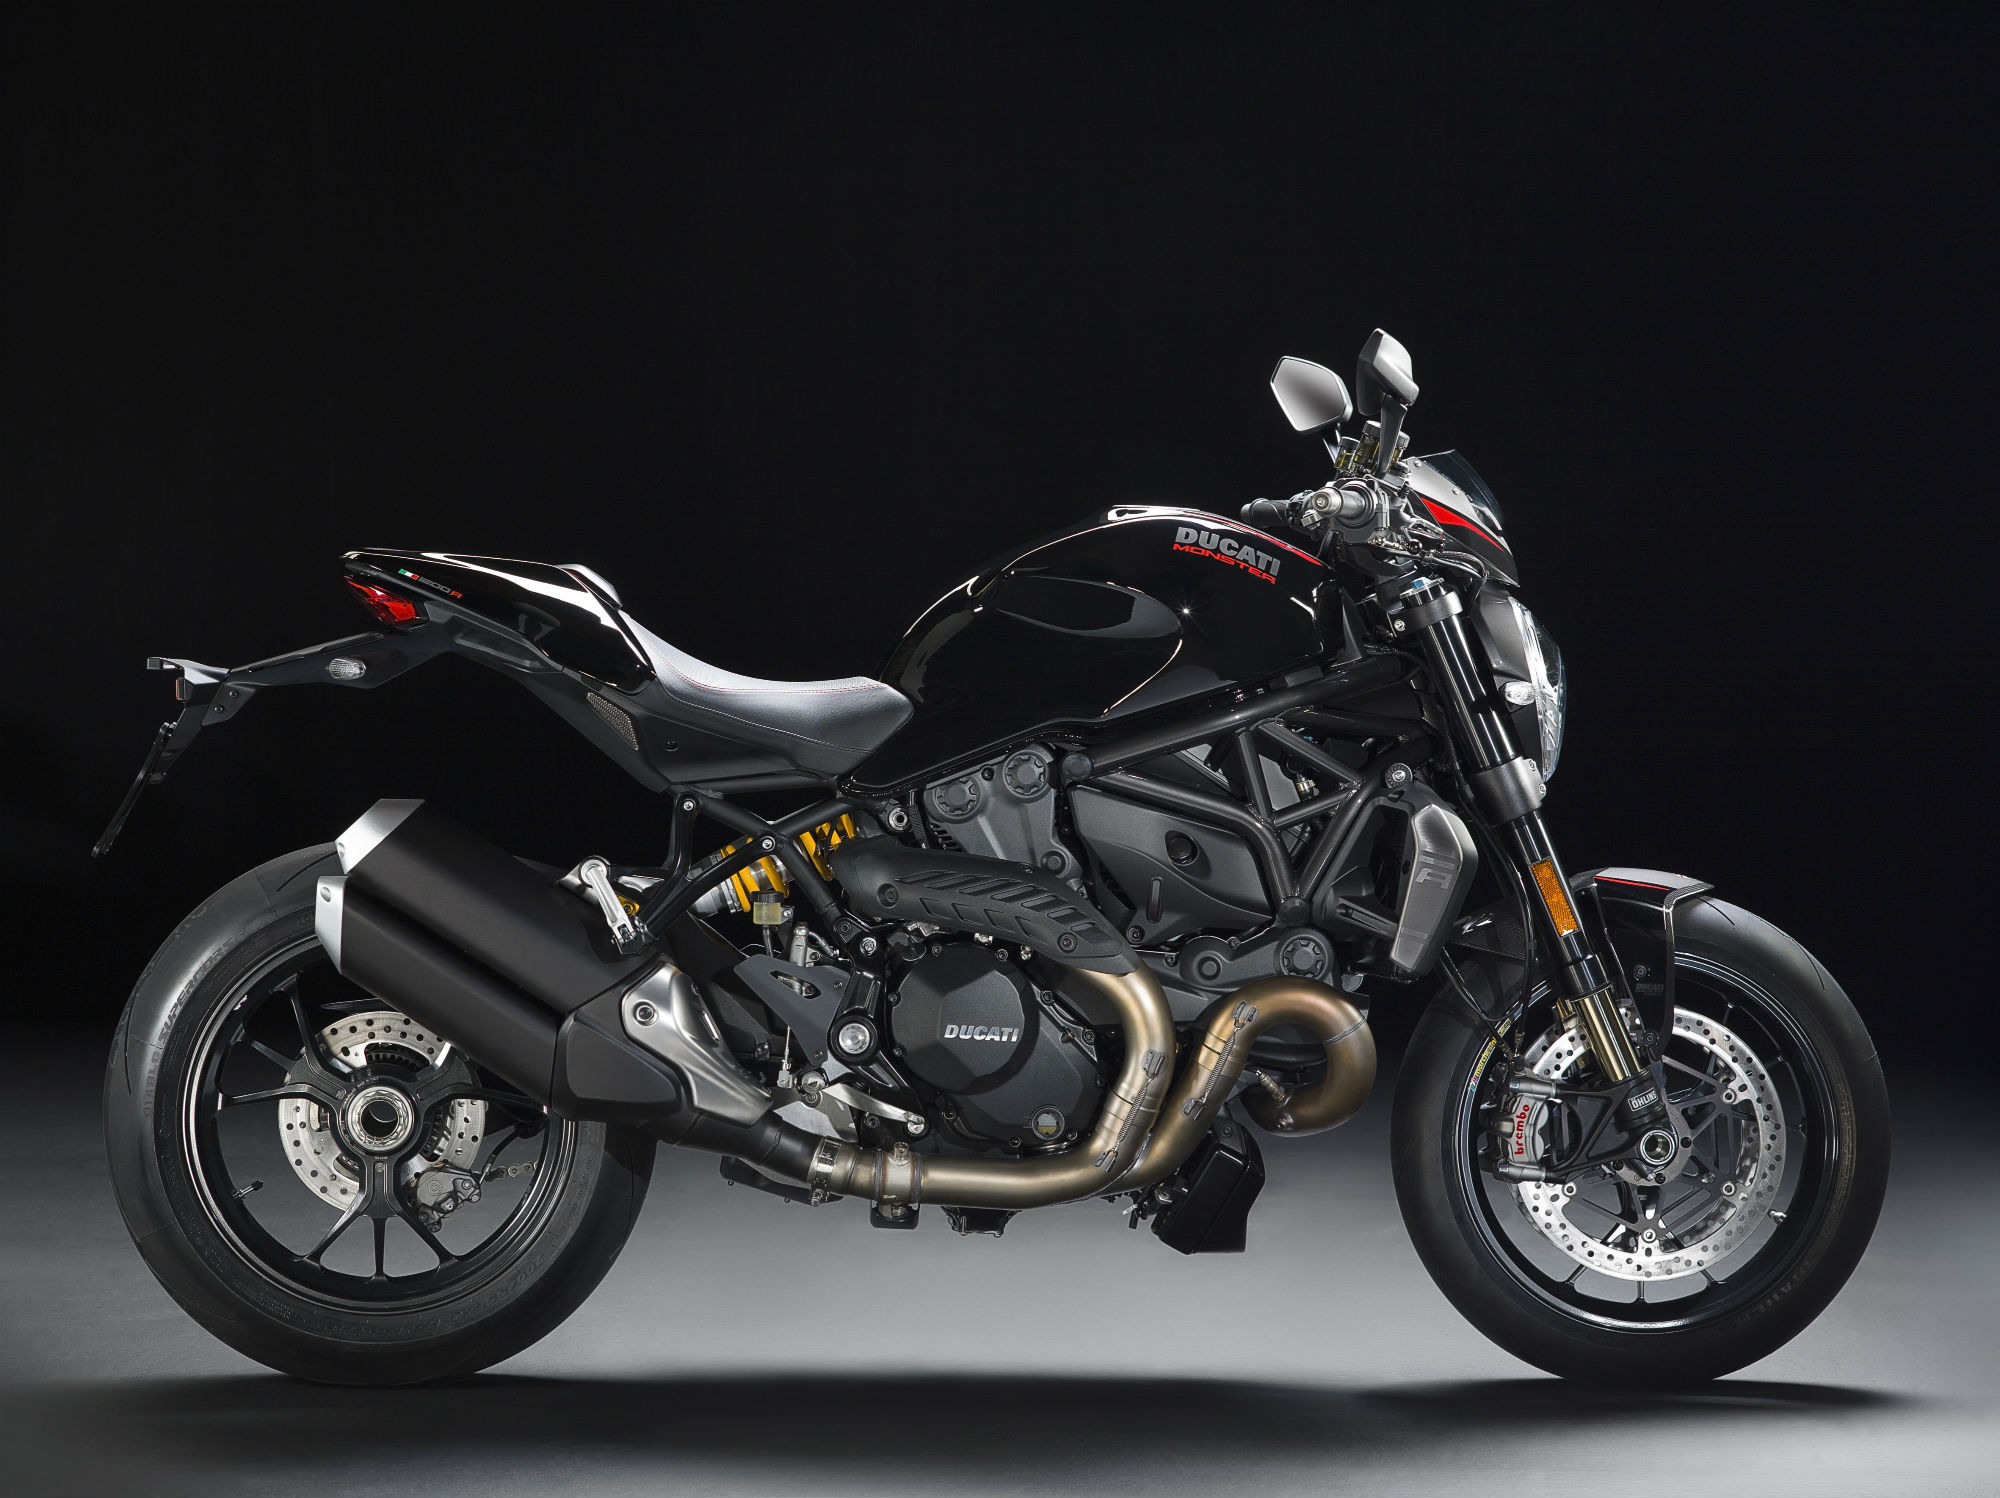 Ducati Monster 1200 R revealed